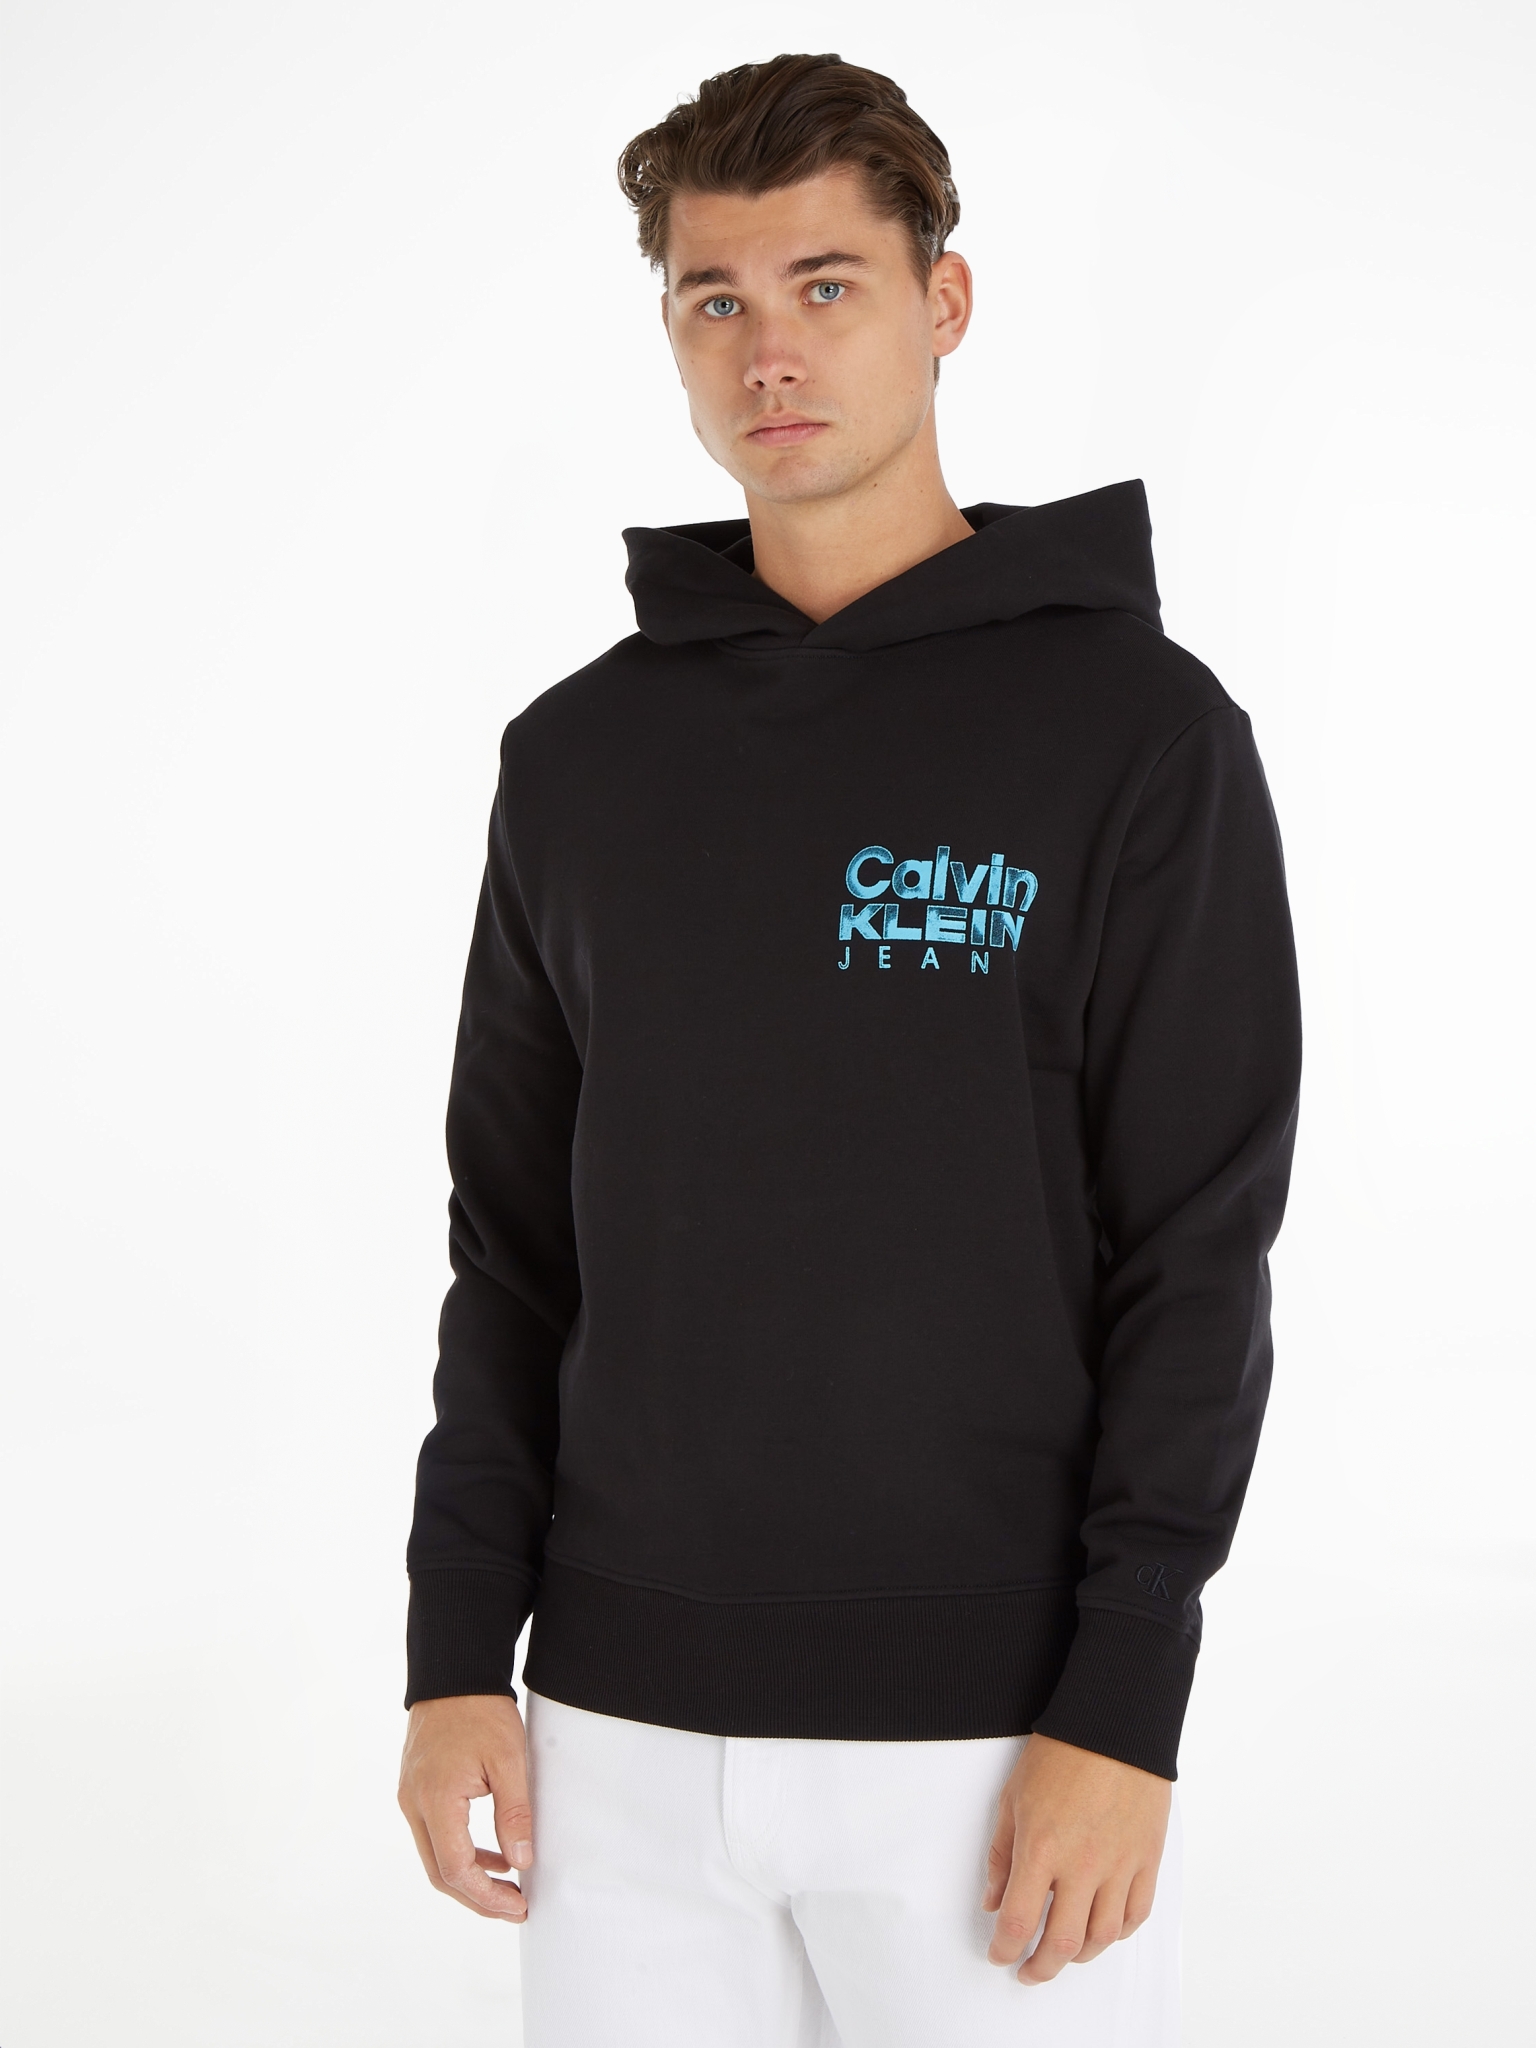 CALVIN KLEIN JEANS Kapuzensweatshirt mit Aufdruck 10704149 kaufen | WÖHRL